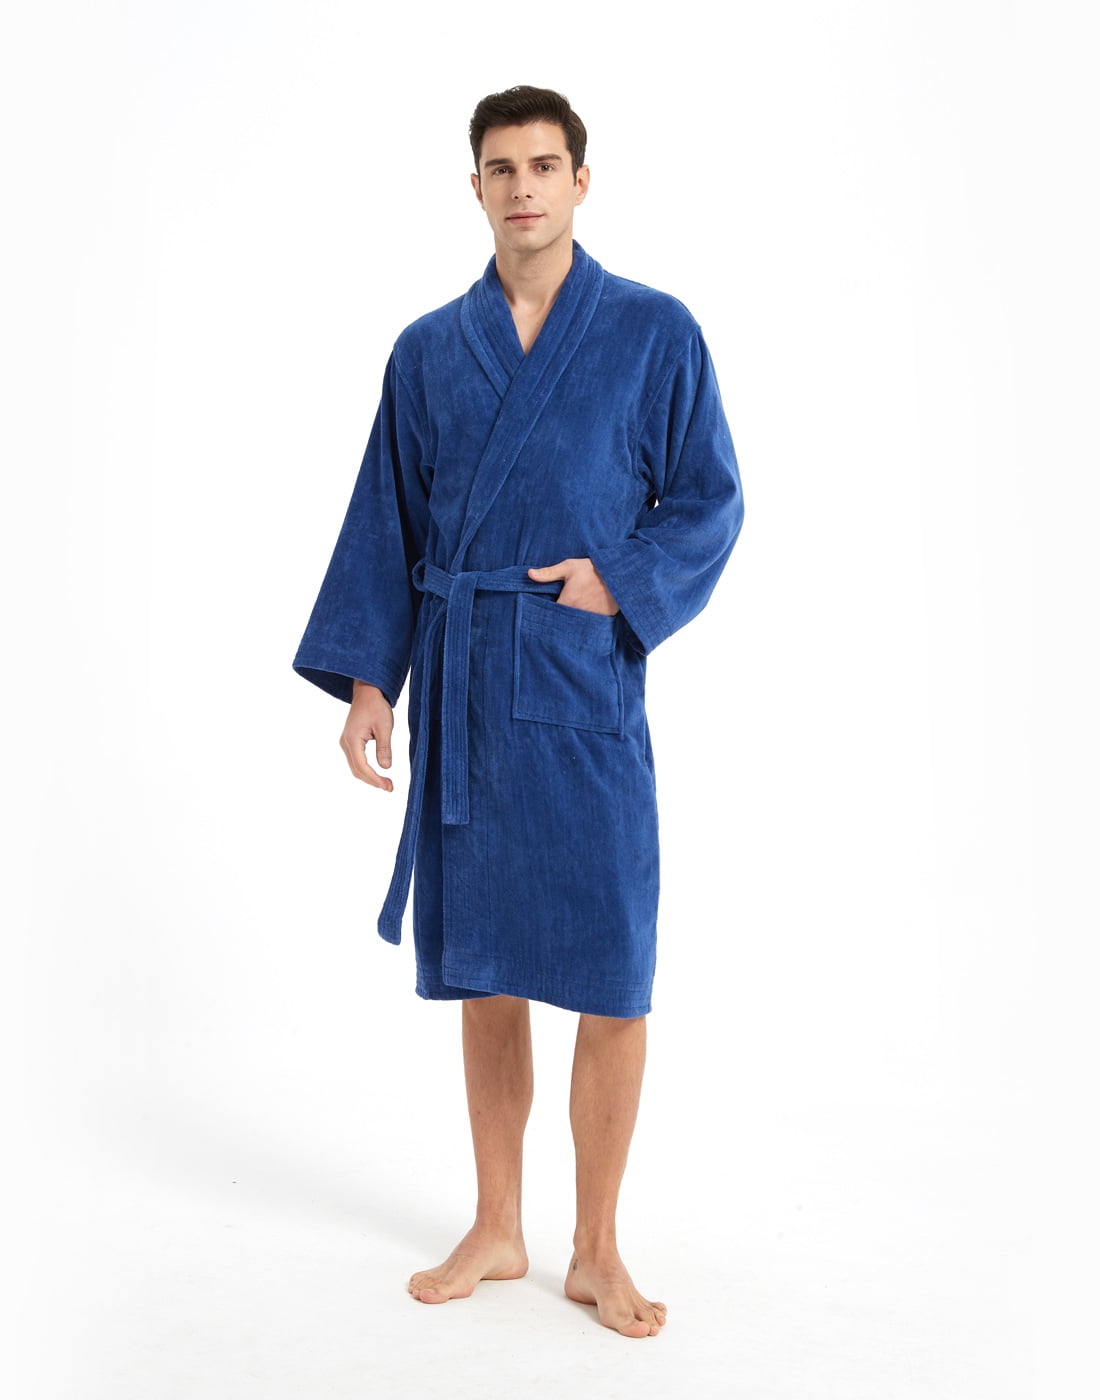 Marquess Fleece Cotton Bathrobe for Men and Women, Plush Warm Comfy ...